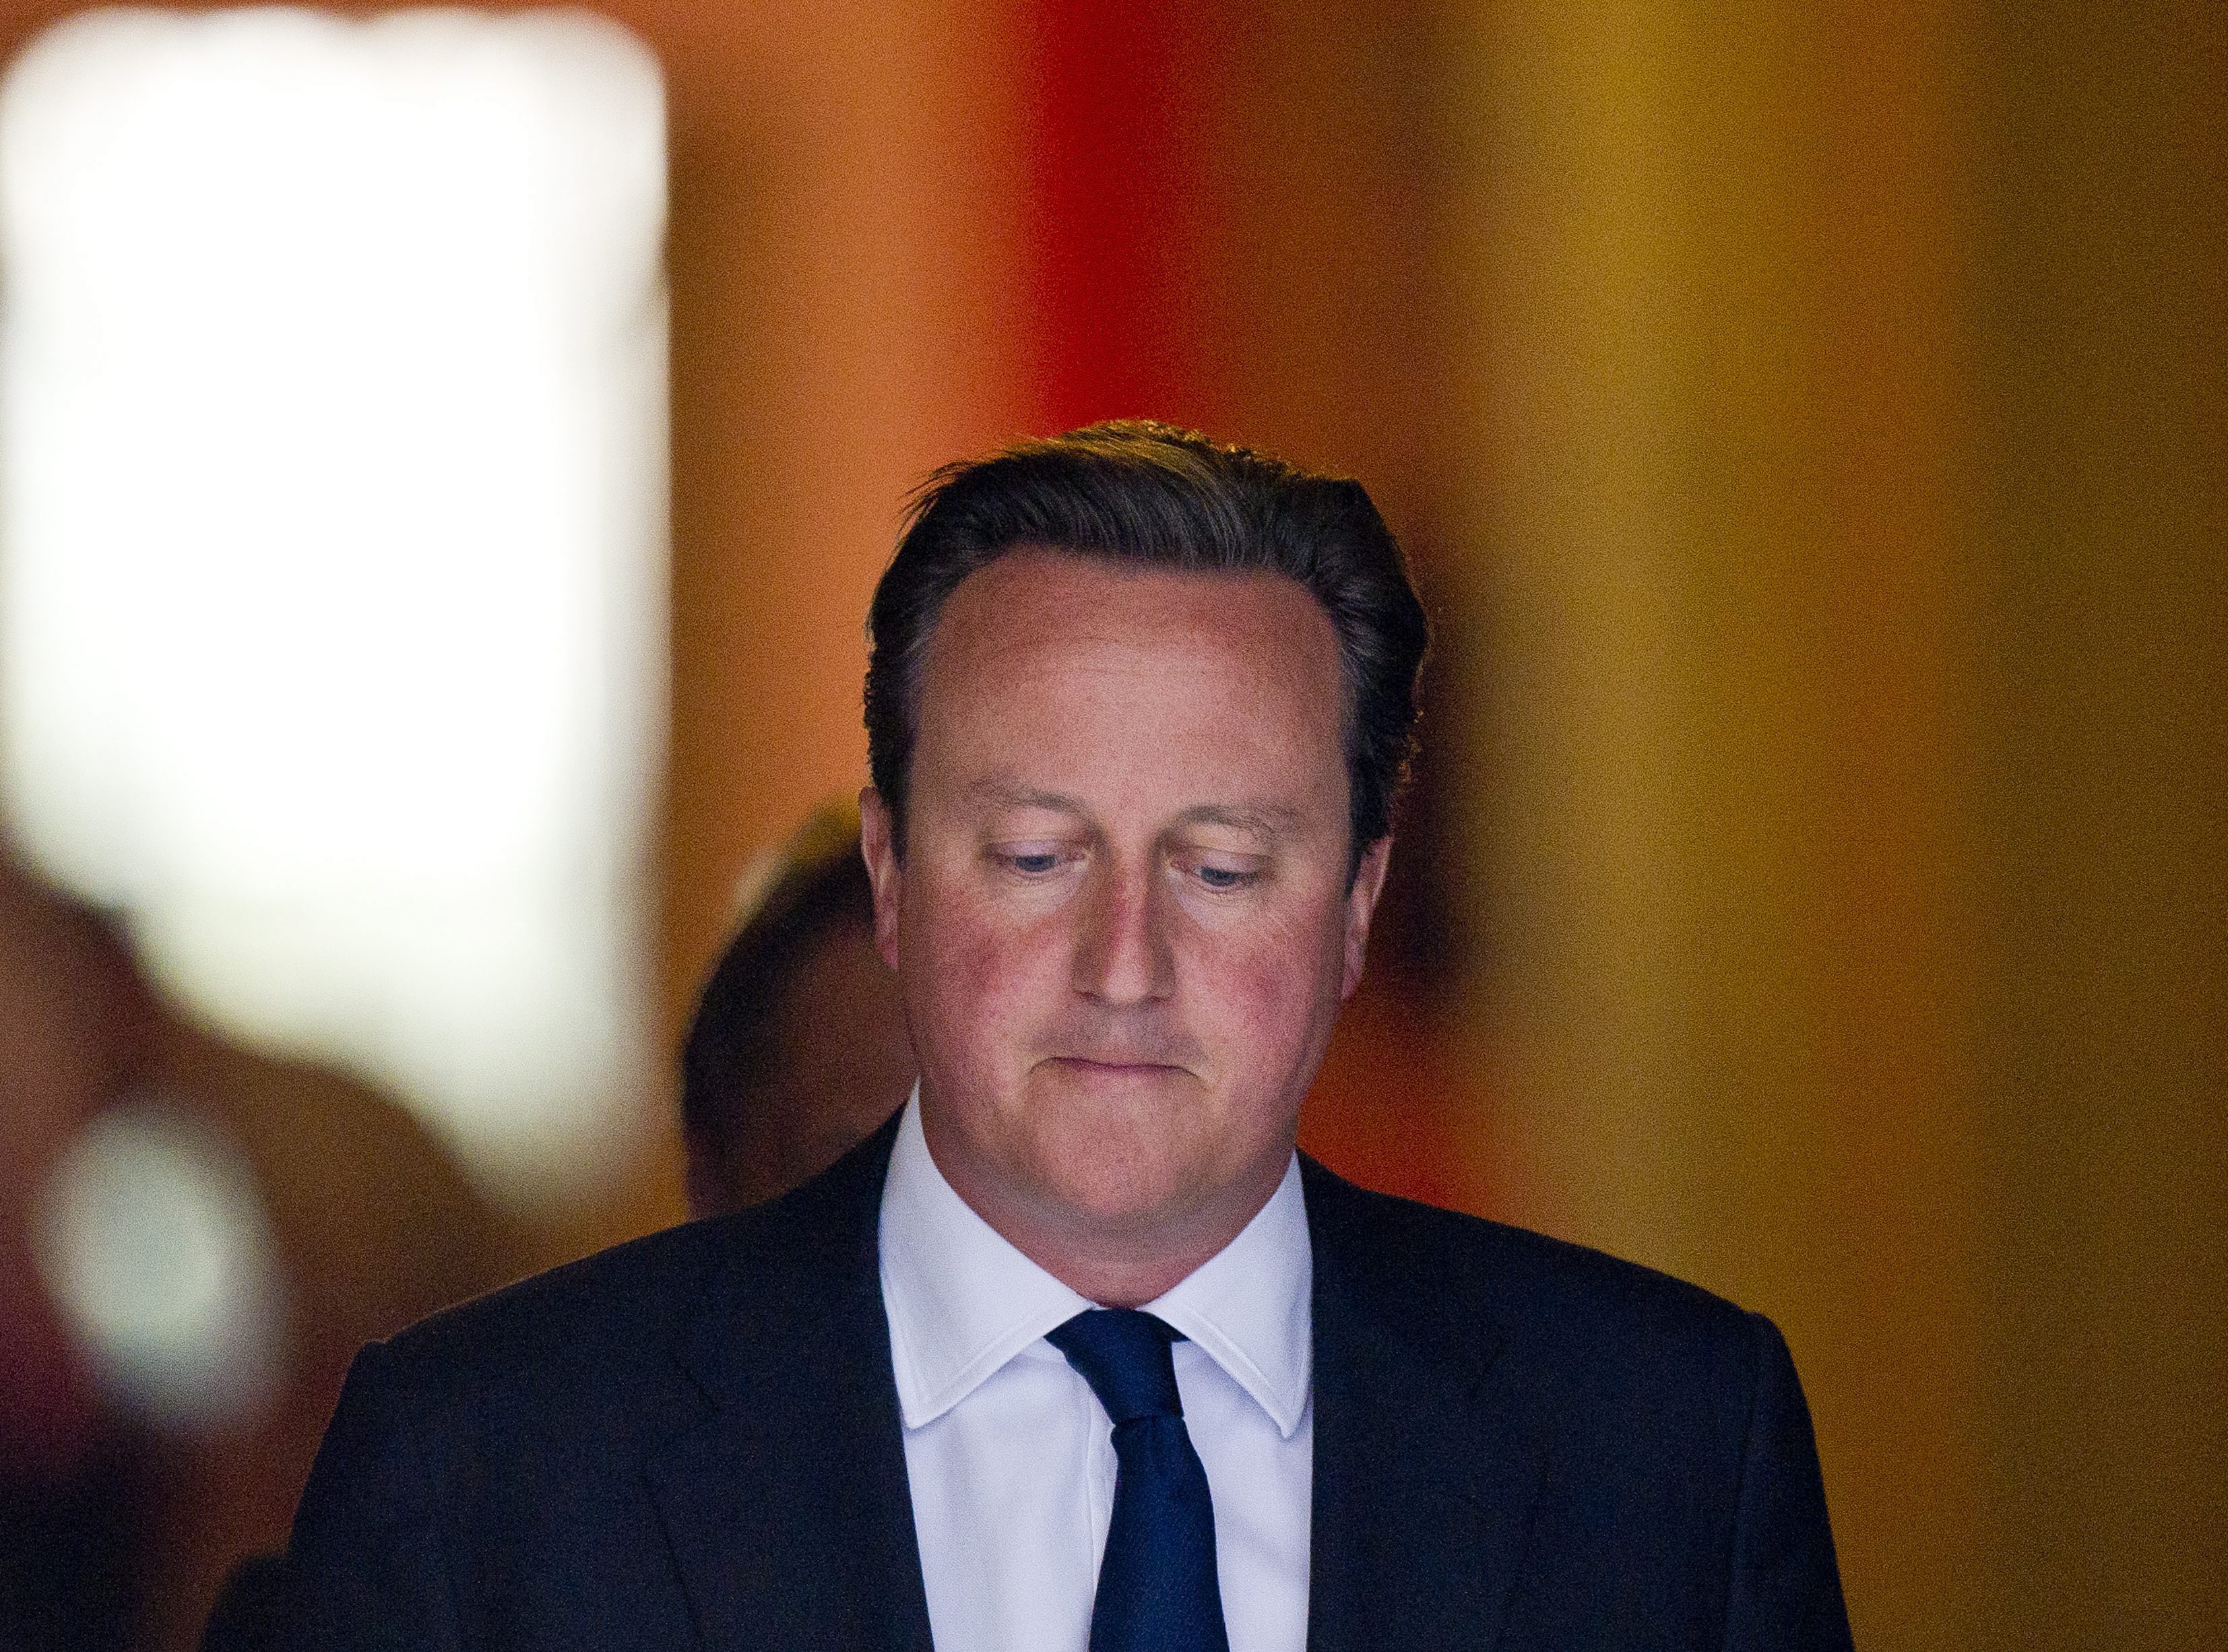 De Britse premier David Cameron heeft donderdagavond in het Lagerhuis een nederlaag geleden. Een kleine meerderheid stemde tegen een motie waarin de regering in beginsel om toestemming vroeg voor militaire interventie in Syrië. De motie was met mitsen en maren omkleed. Zo zou de VN-Veilgheidsraad, waarin ook Groot-Brittannië zit, wachten op de bevindingen van de VN-wapeninspecteurs alvorens een beslissing te nemen. Ook zou er nog een Lagerhuisdebat volgen voor eventuele actie. Op verzoek van een parlementslid gaf Cameron tevens de verzekering dat hij geen gebruik maakt van het ,,koninlijk voorrecht'' om zonder toestemming van het parlement een oorlog te beginnen. Cameron zinspeelde eerder deze week op acties zonder een uitspraak van de Veiligheidsraad, maar is onder druk van leden van de regeringspartijen en de oppositie teruggekrabbeld. Vele Lagerhuisleden vrezen opnieuw een oorlog te worden 'ingerommeld', zoals in 2003 gebeurde, toen de socialistische premier Tony Blair besloot mee te doen met de invasie in Irak om het regime van dictator Saddam Hussein omver te werpen. Irak beschikte volgens Blair en de Amerikaanse president George Bush over massavernietigingswapens, een beschuldiging die niet houdbaar bleek. Cameron kreeg donderdag voor militaire acties tegen Syrië steun van de interne volkenrechtelijke adviseur van de Britse regering. Die meent dat zo'n interventie volgens het internationaal recht is toegestaan, ook al zou de VN-Veiligheidsraad daarmee niet instemmen. Daarmee neemt de adviseur een ander standpunt in dan de externe volkenrechtelijke adviseur van de Nederlandse regering die militaire acties in de gegeven situatie onrechtmatig acht. De VN-wapeninspecteurs deden donderdag voor de derde keer onderzoek naar het mogelijke gebruik van chemische wapens. Zij vertrekken zaterdagmorgen uit het Arabische land. Volgens rebellen zijn de plaatsen Zamalkaenal-Mleha bij de hoofdstad Damascus, die zij woensdag bezochten, enkele uren na hun vertrek onder vuur komen te liggen.